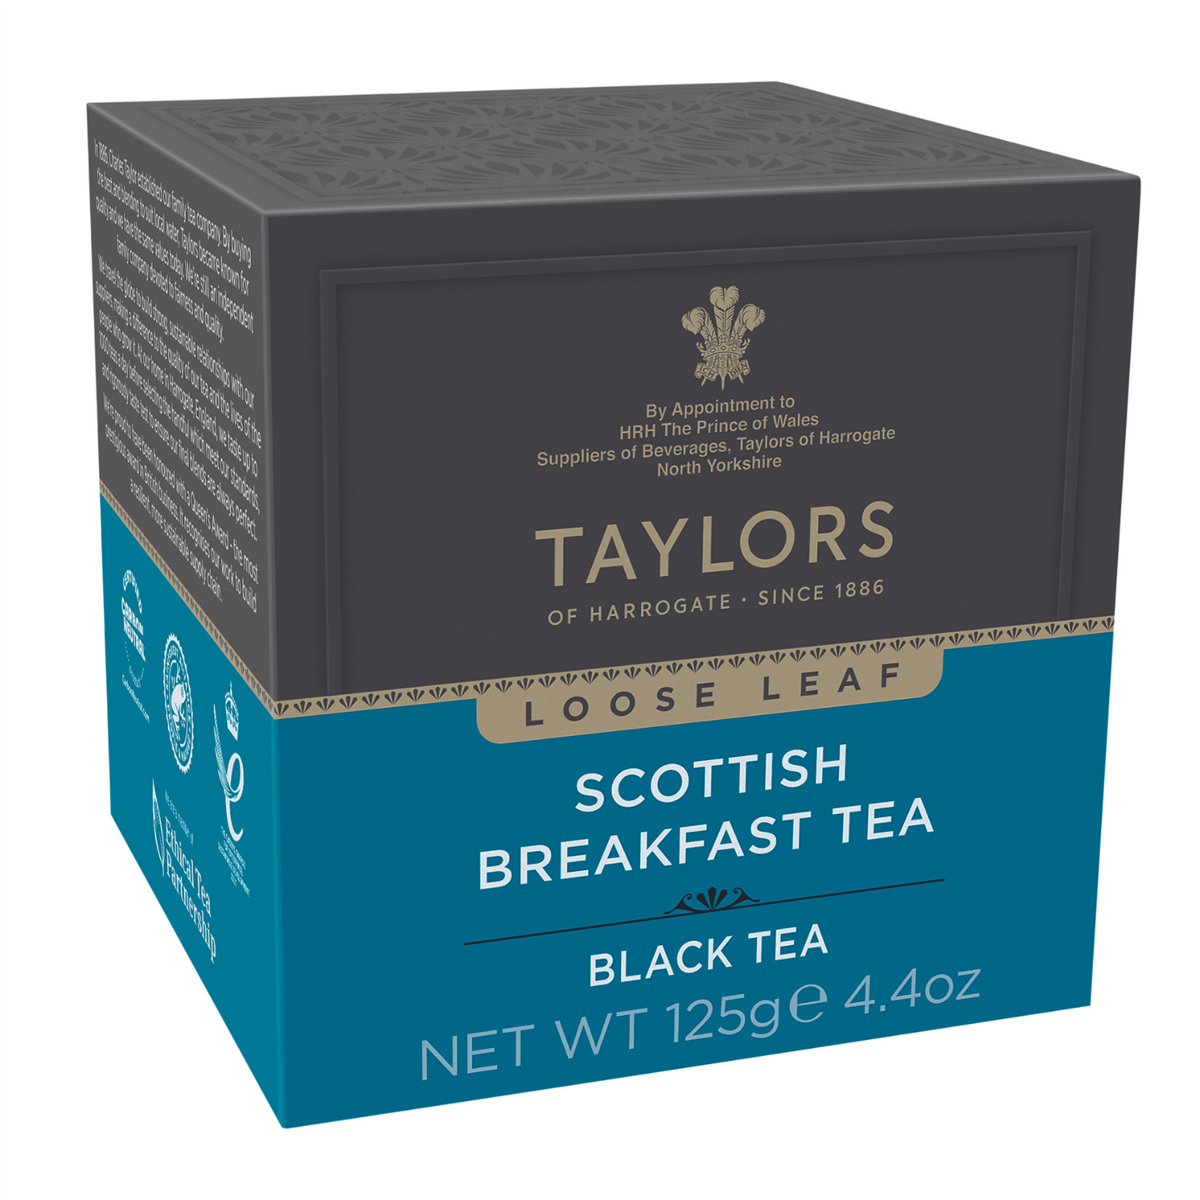 Taylors Tea of Harrogate Scottish Breakfast Loose Tea Box